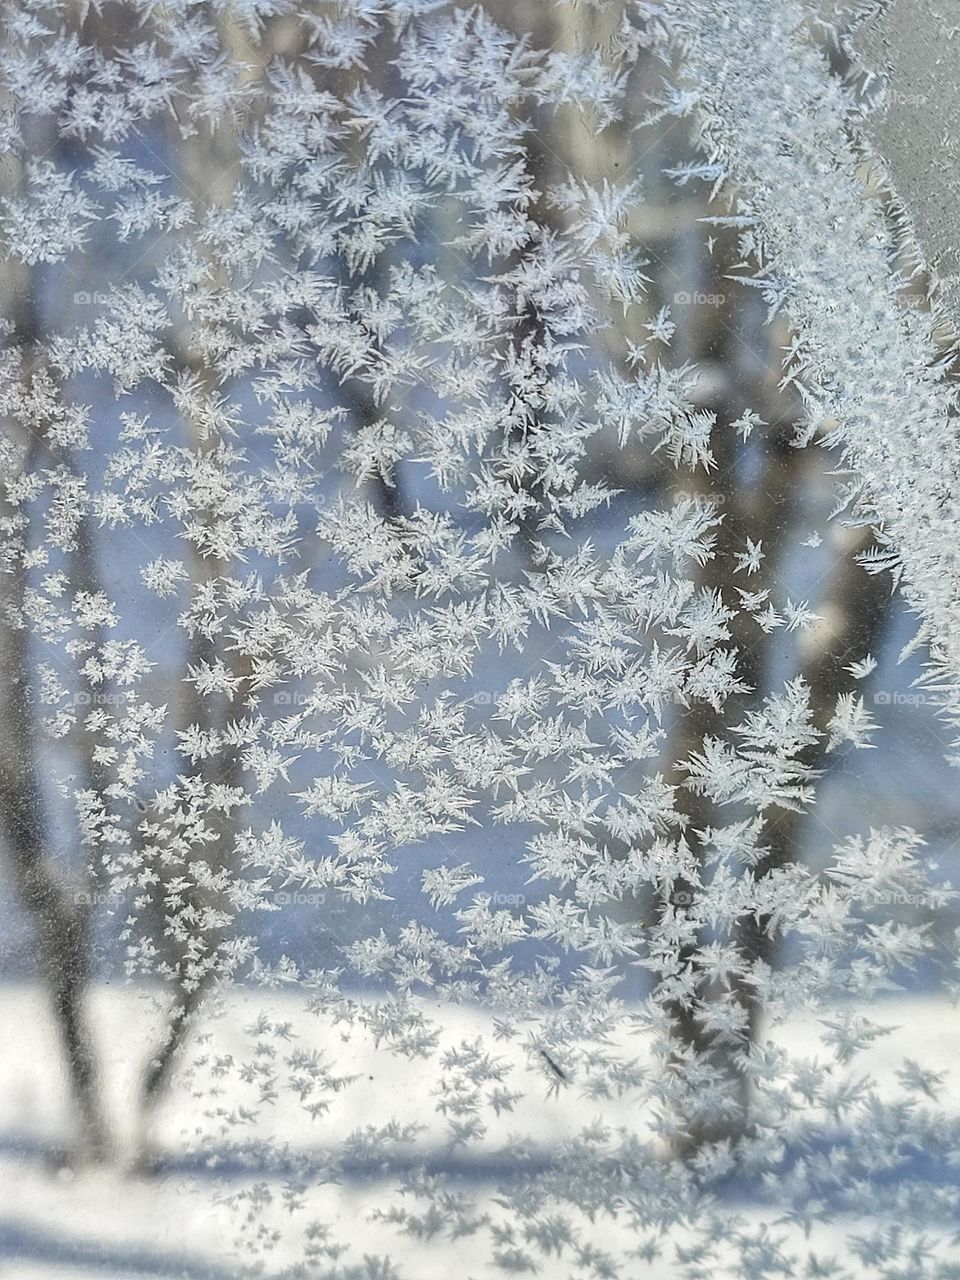 мороз на окнах